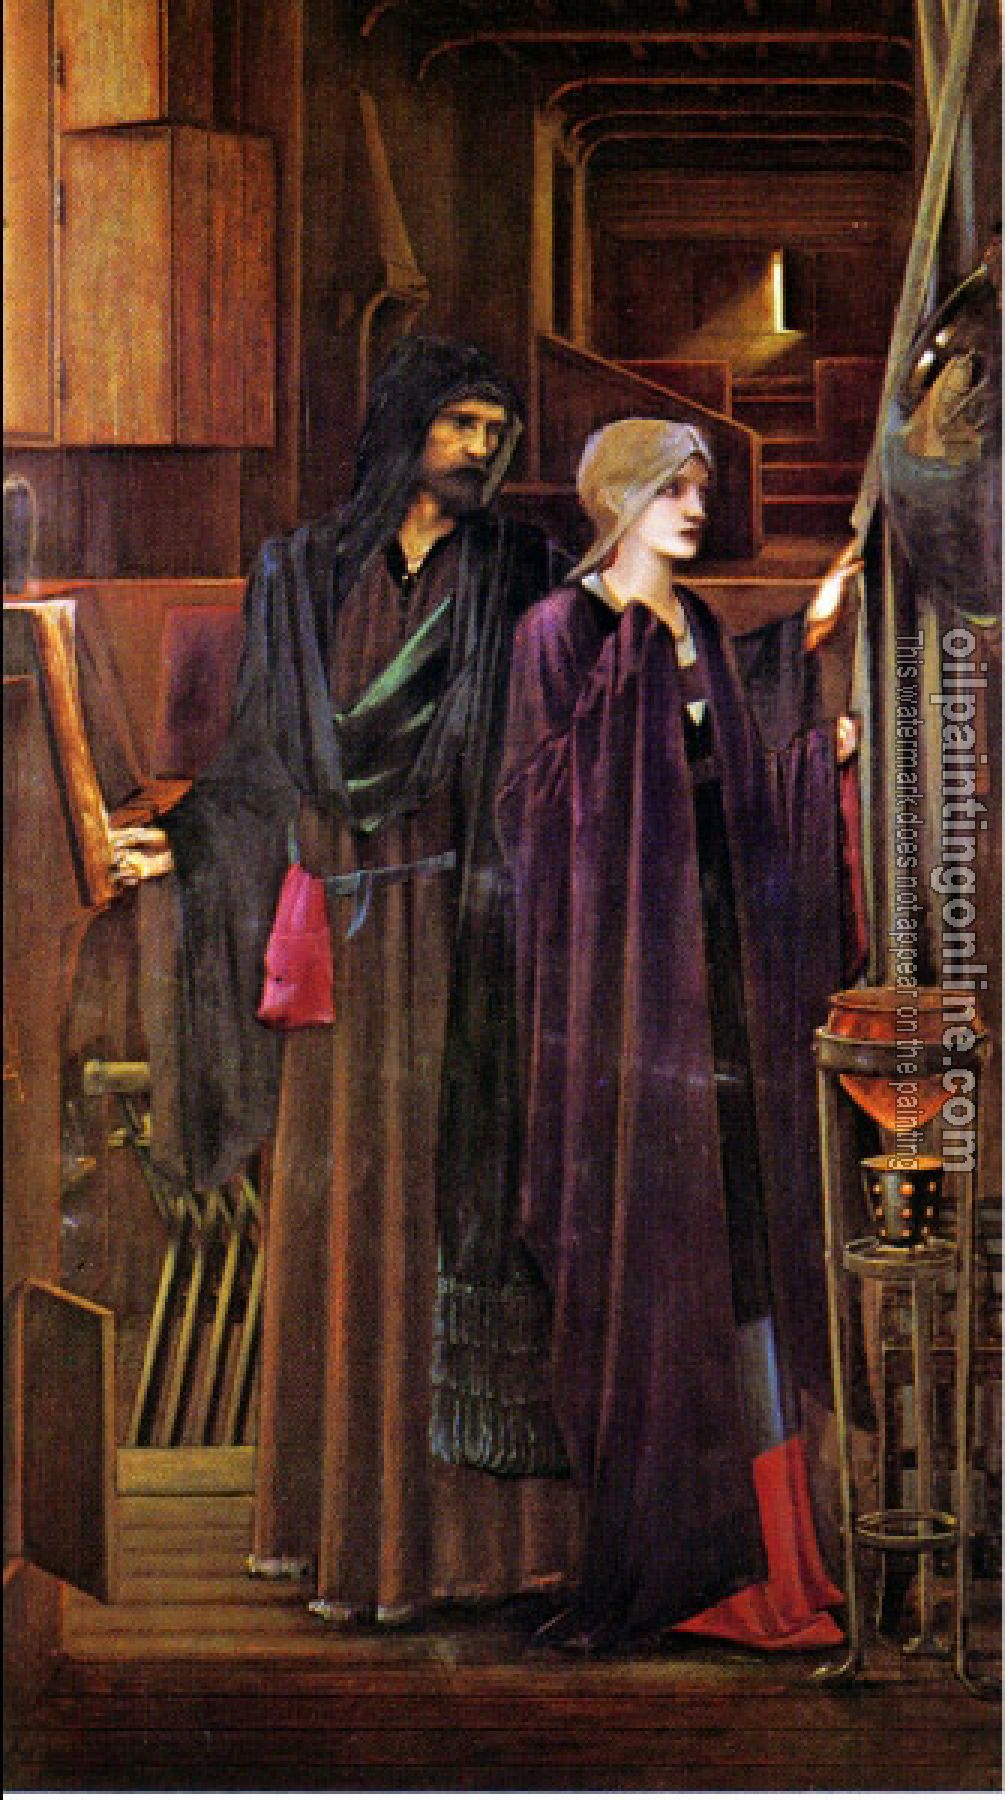 Burne-Jones, Sir Edward Coley - The Wizard